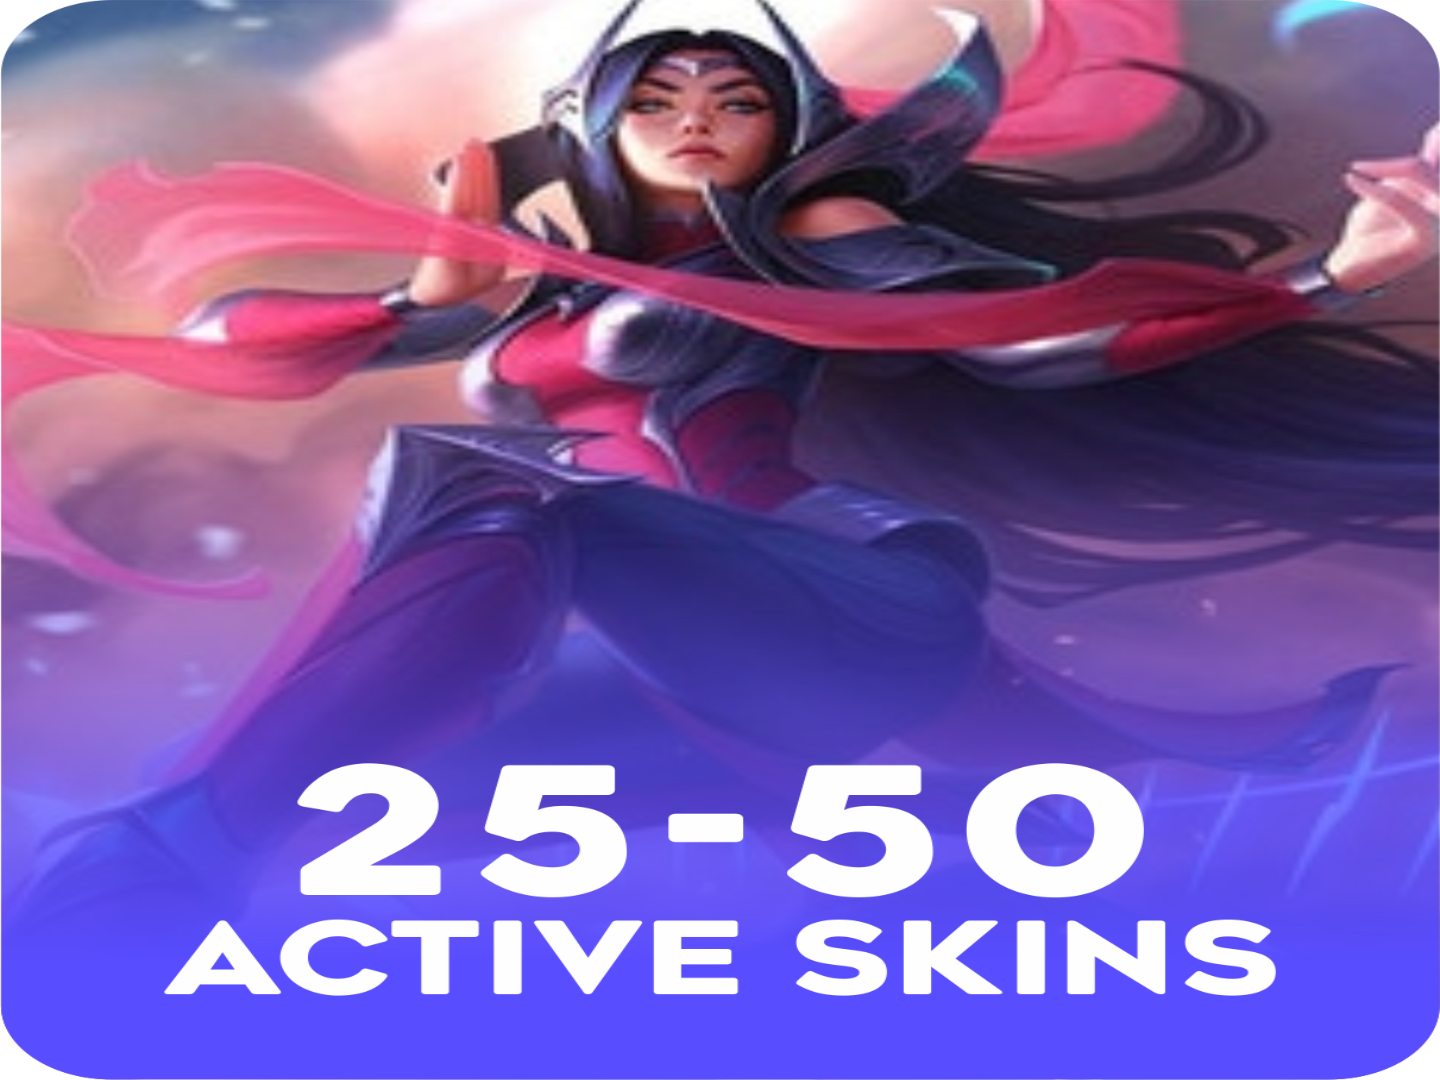 Active 25-50 skins Account